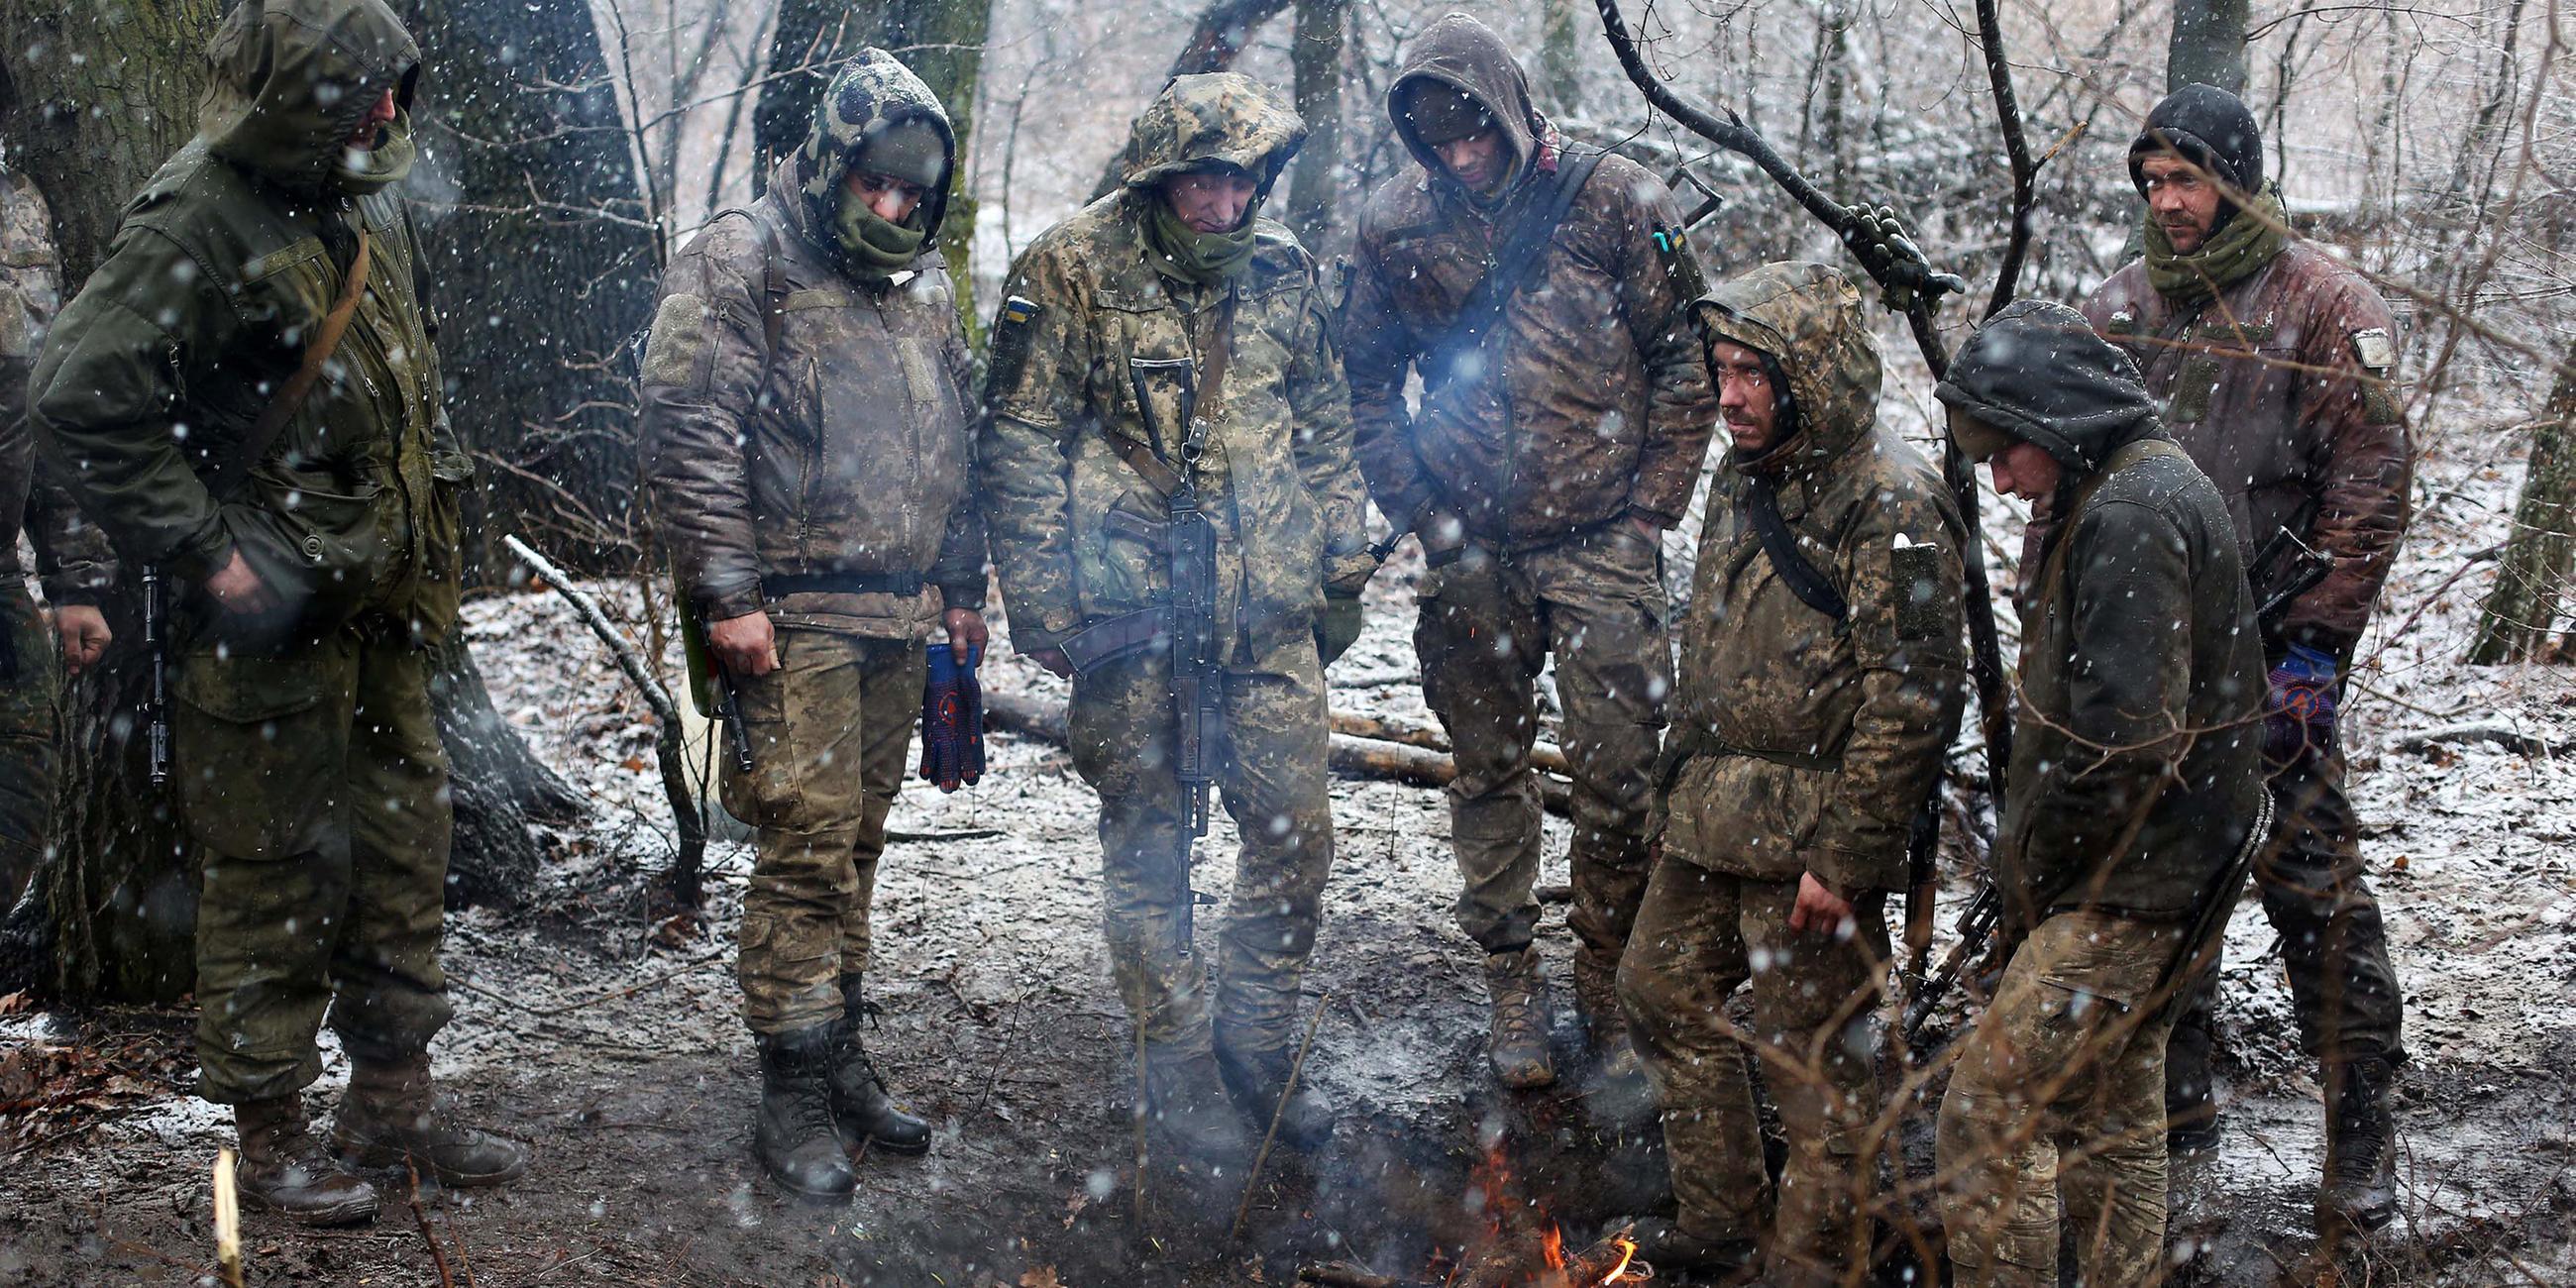 Ukrainische Militärangehörige wärmen sich an einem Feuer in der Region Luhansk, aufgenommen am 03.03.2022